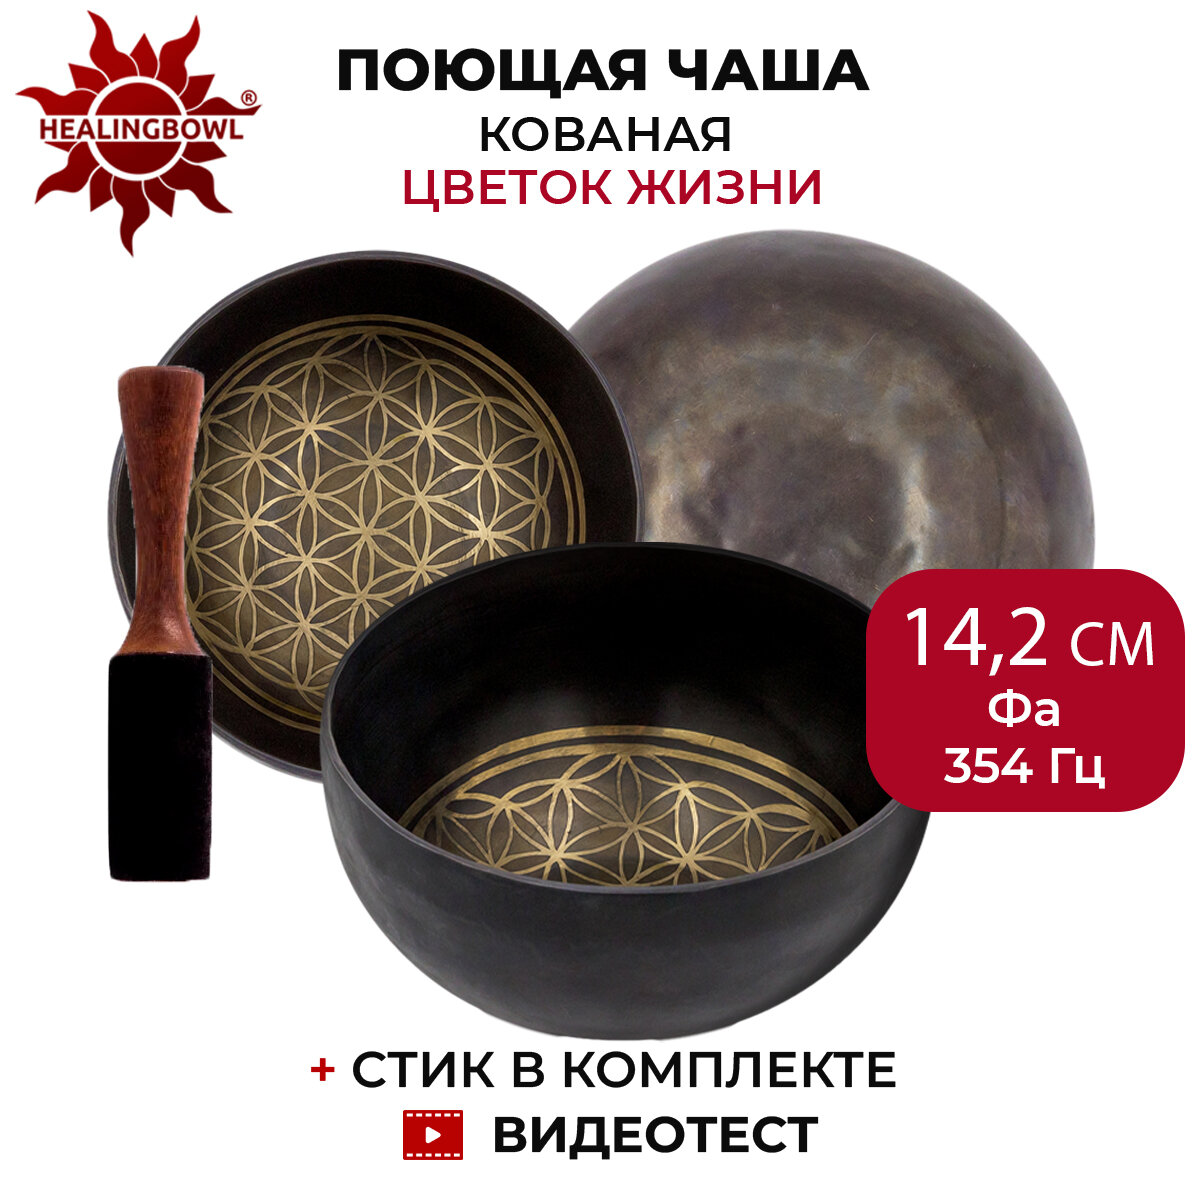 Healingbowl / Поющая чаша кованая "Цветок Жизни", 14,2 см, Фа, 354 Гц, для йоги и медитации